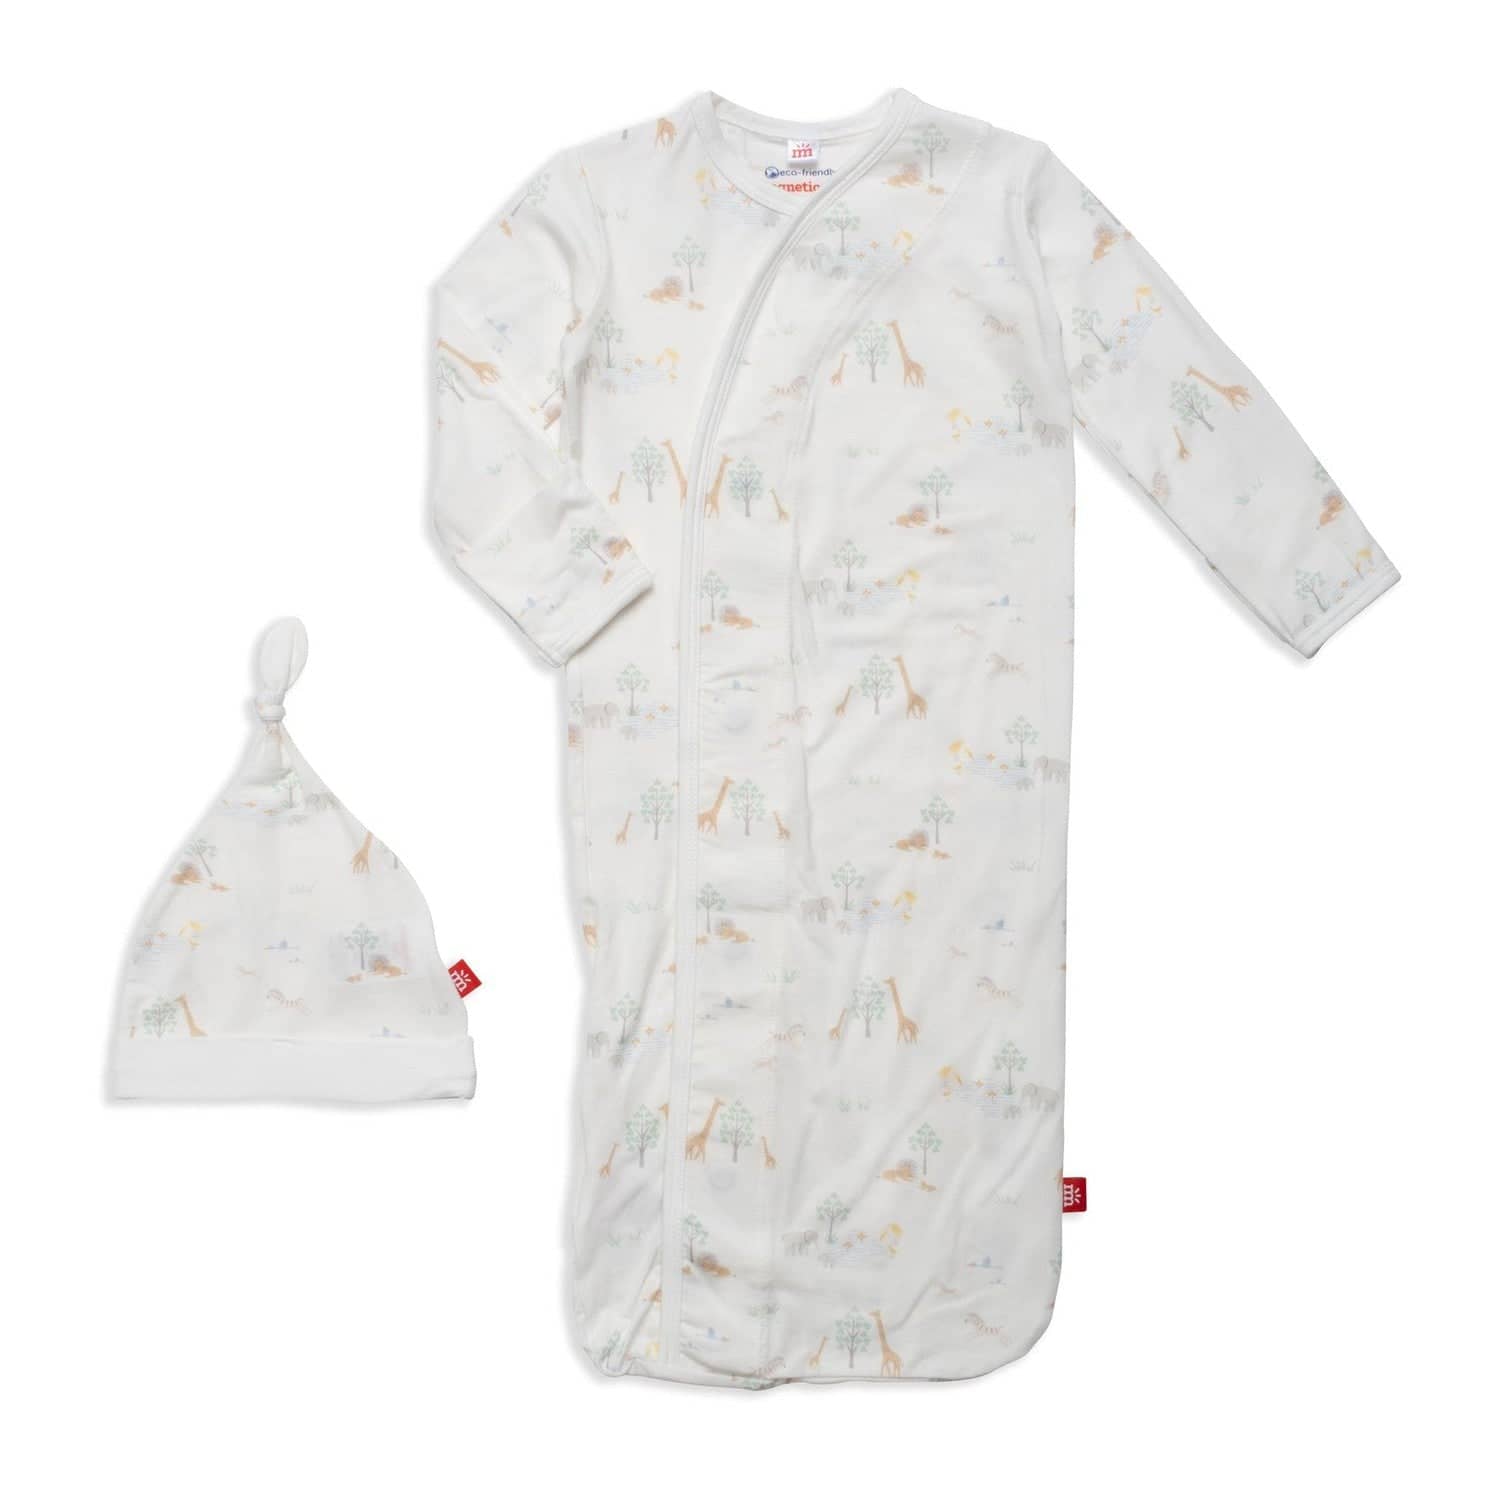 White Serene Safari Modal Magnetic Sleeper Gown + Hat Set